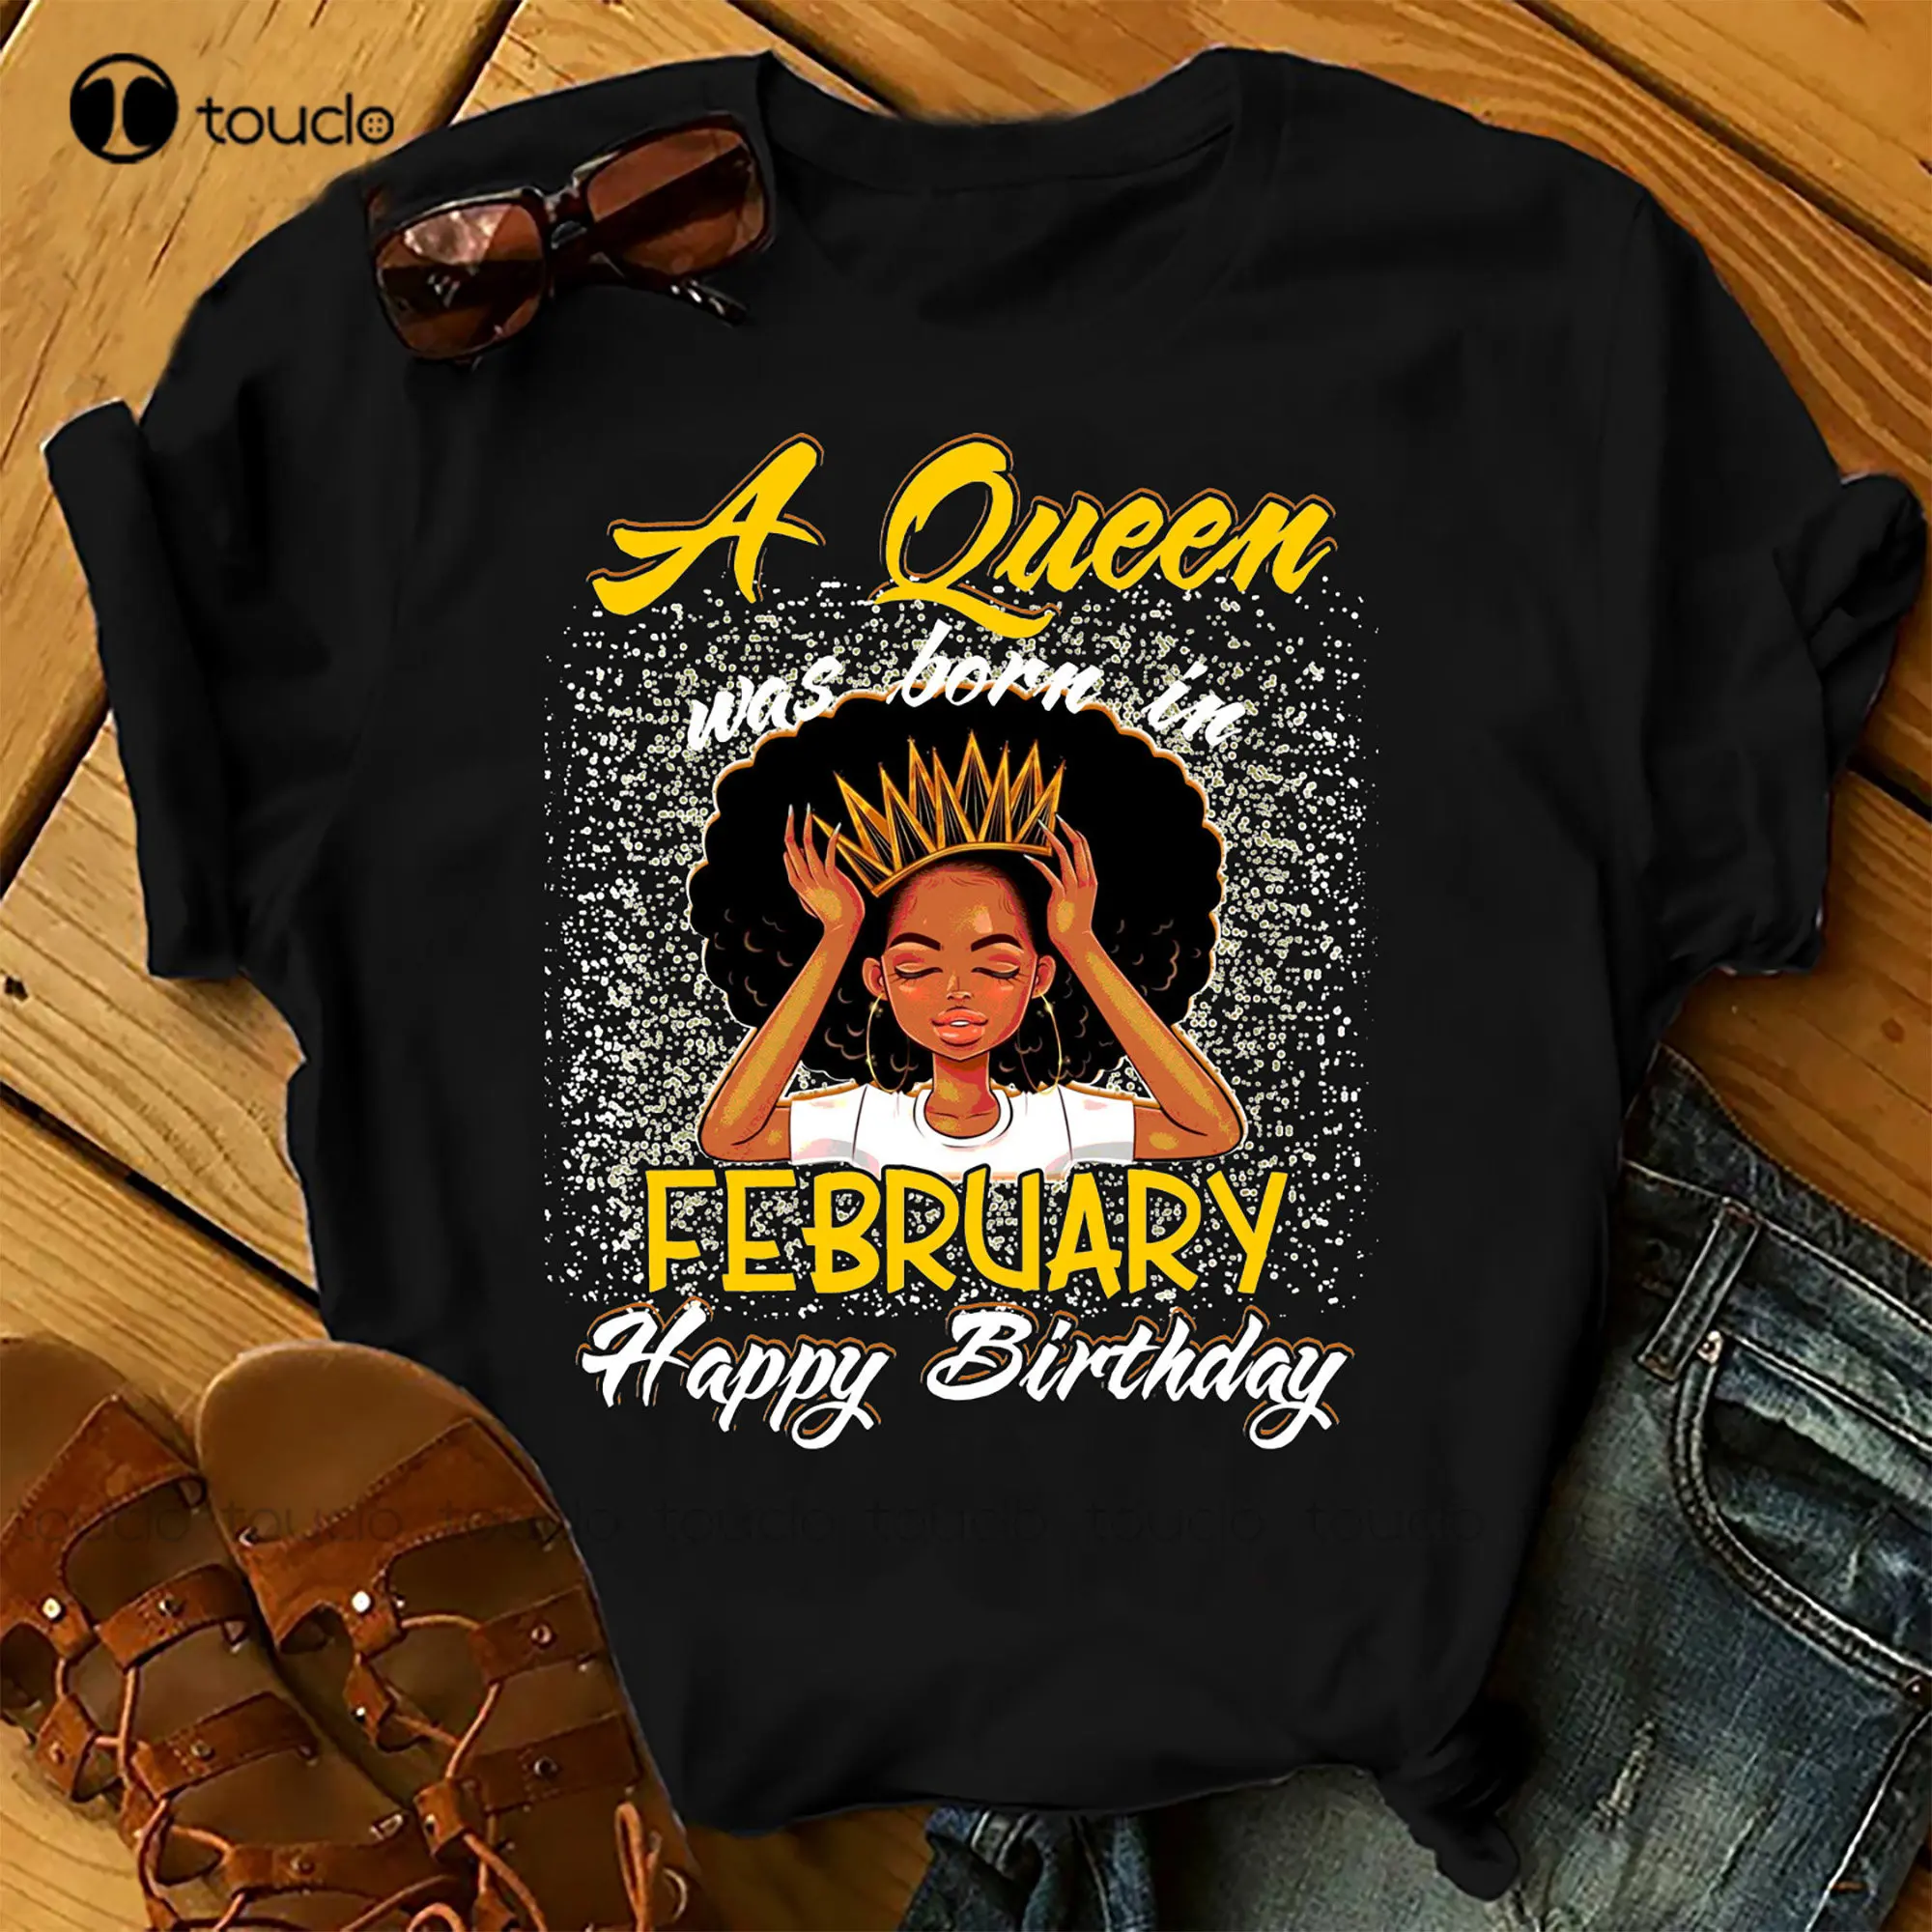 

Женская футболка на день рождения с изображением королевы была родилась в феврале, летние топы, пляжные футболки, рубашки с изображением фи...